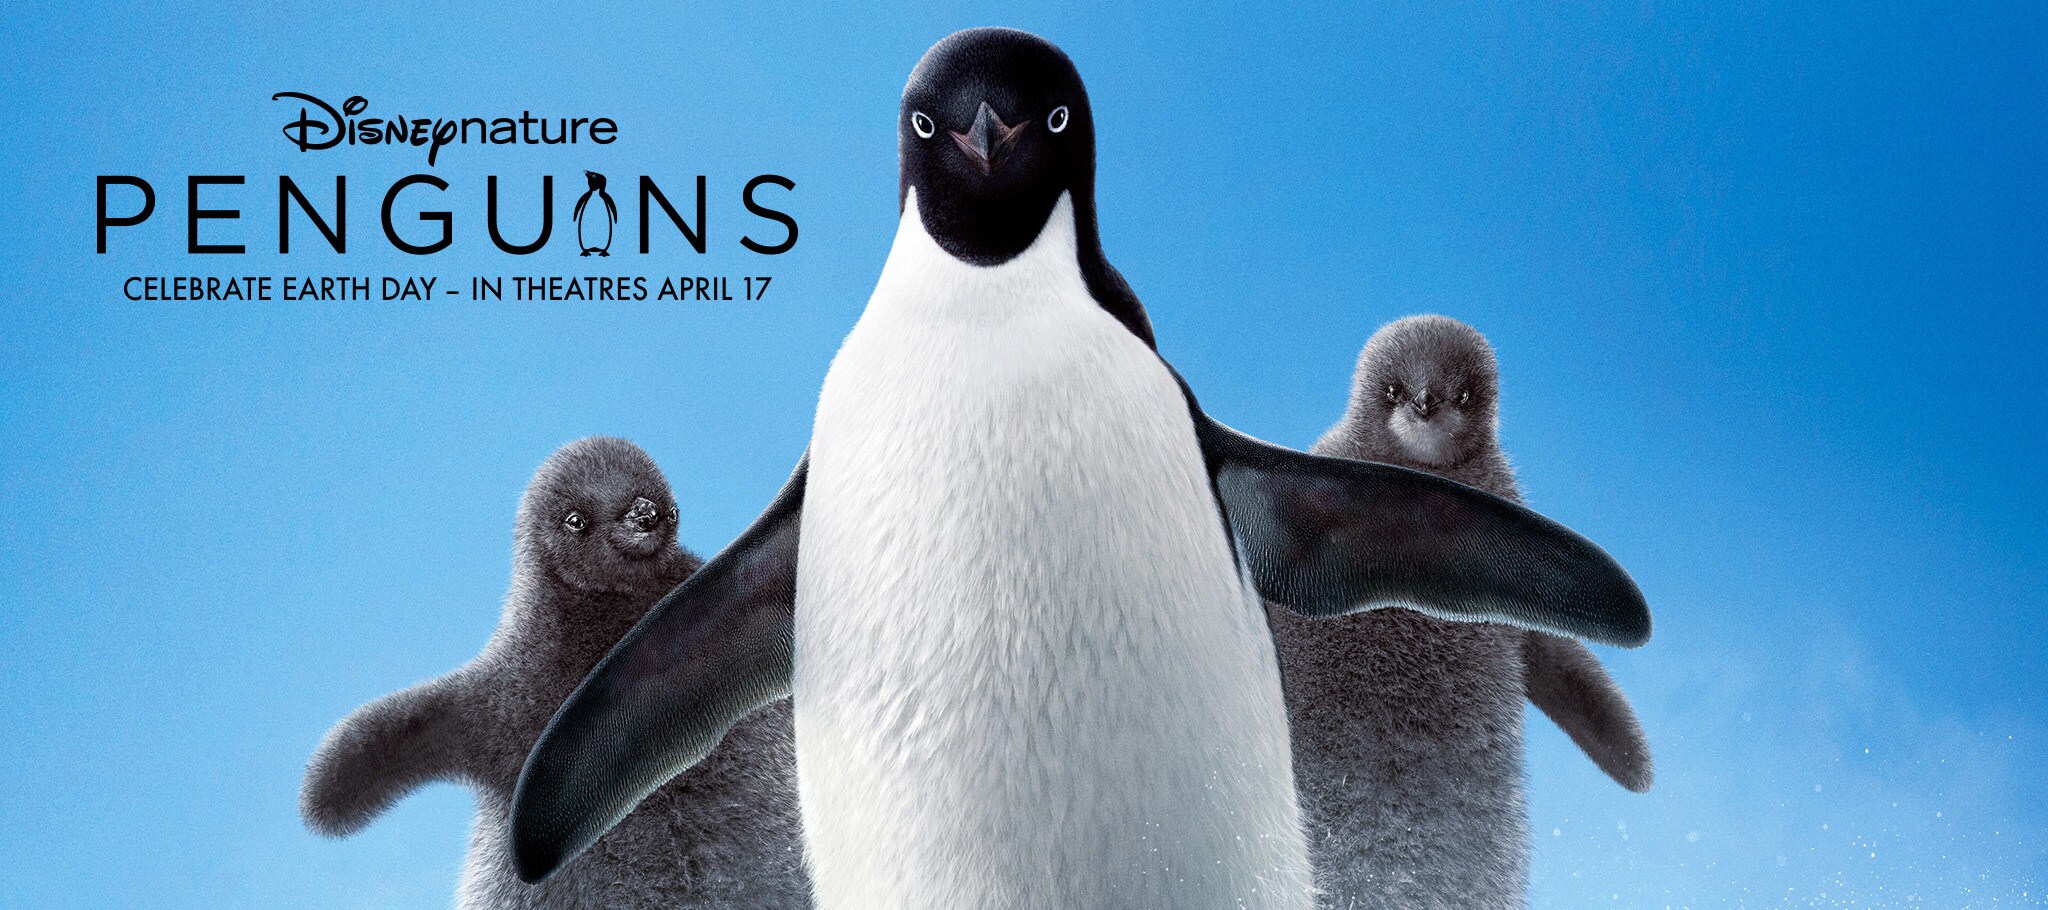 Cineblog01-[HD) Scaricare Penguins [2019] film Online Gratuito Streaming ITA Completo |CB01~720p